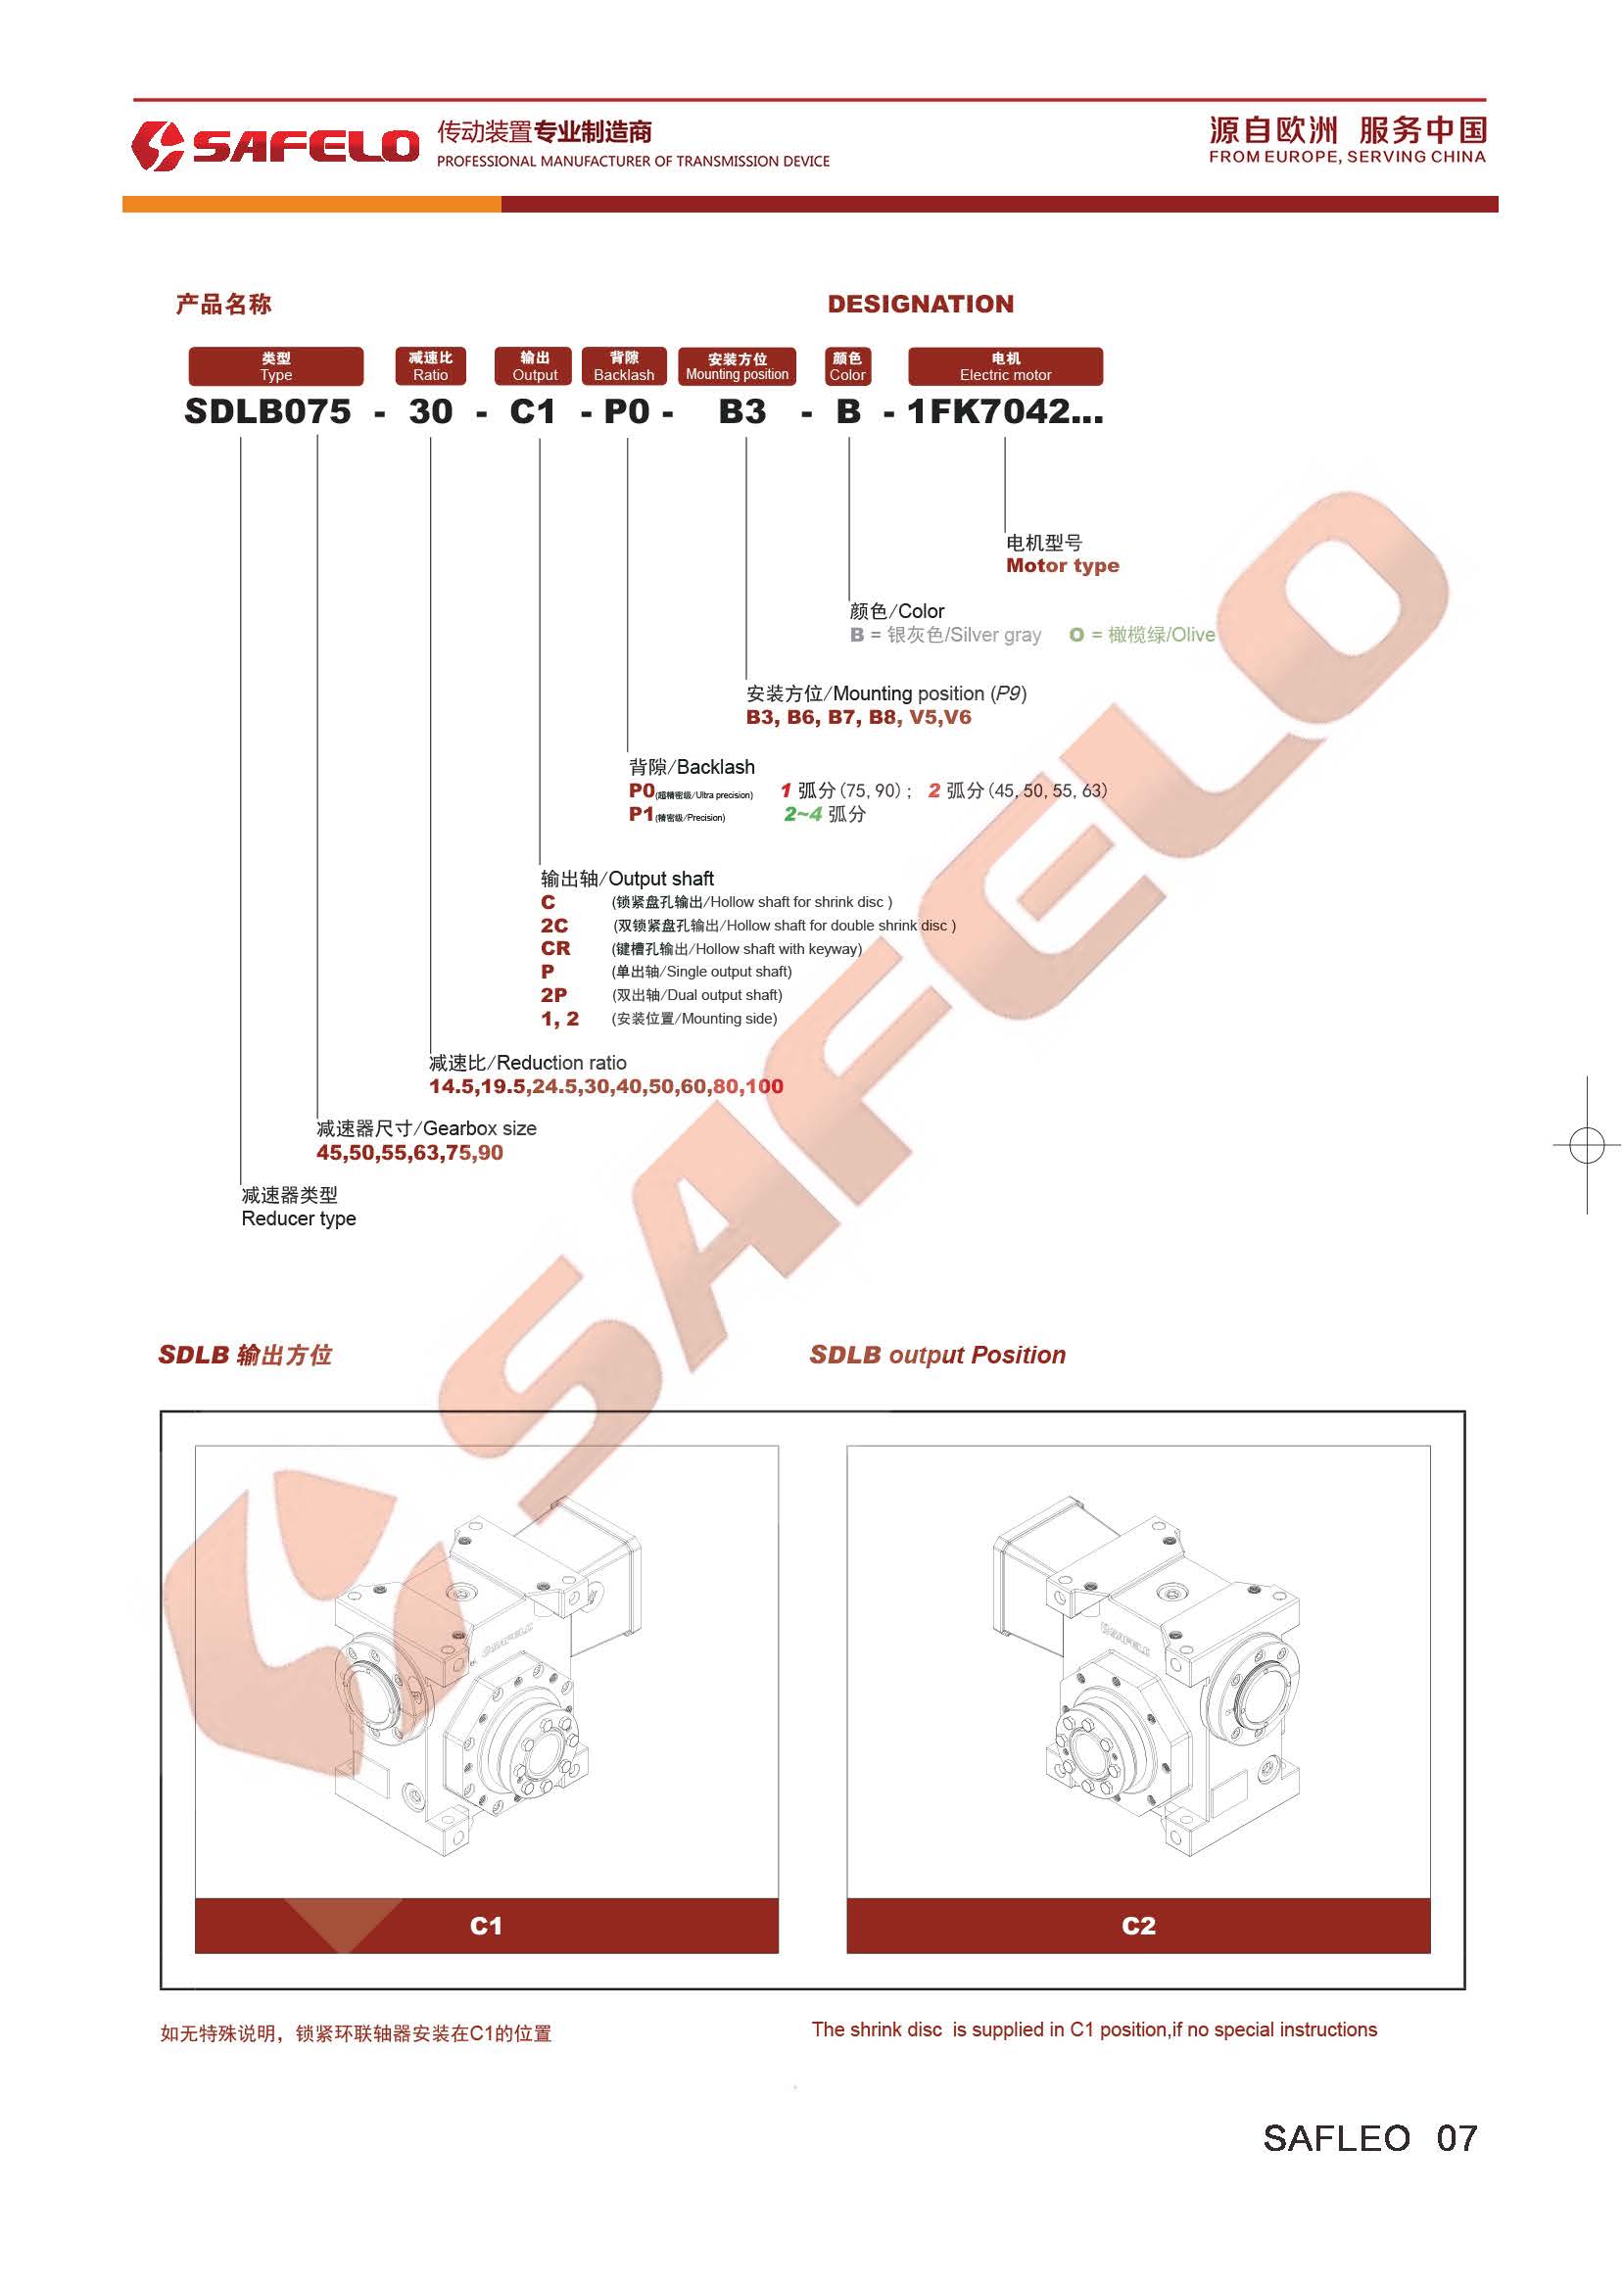 页面提取自－2020塞弗勒-SDLB双导程蜗轮蜗杆减速机-型号表示方法.jpg